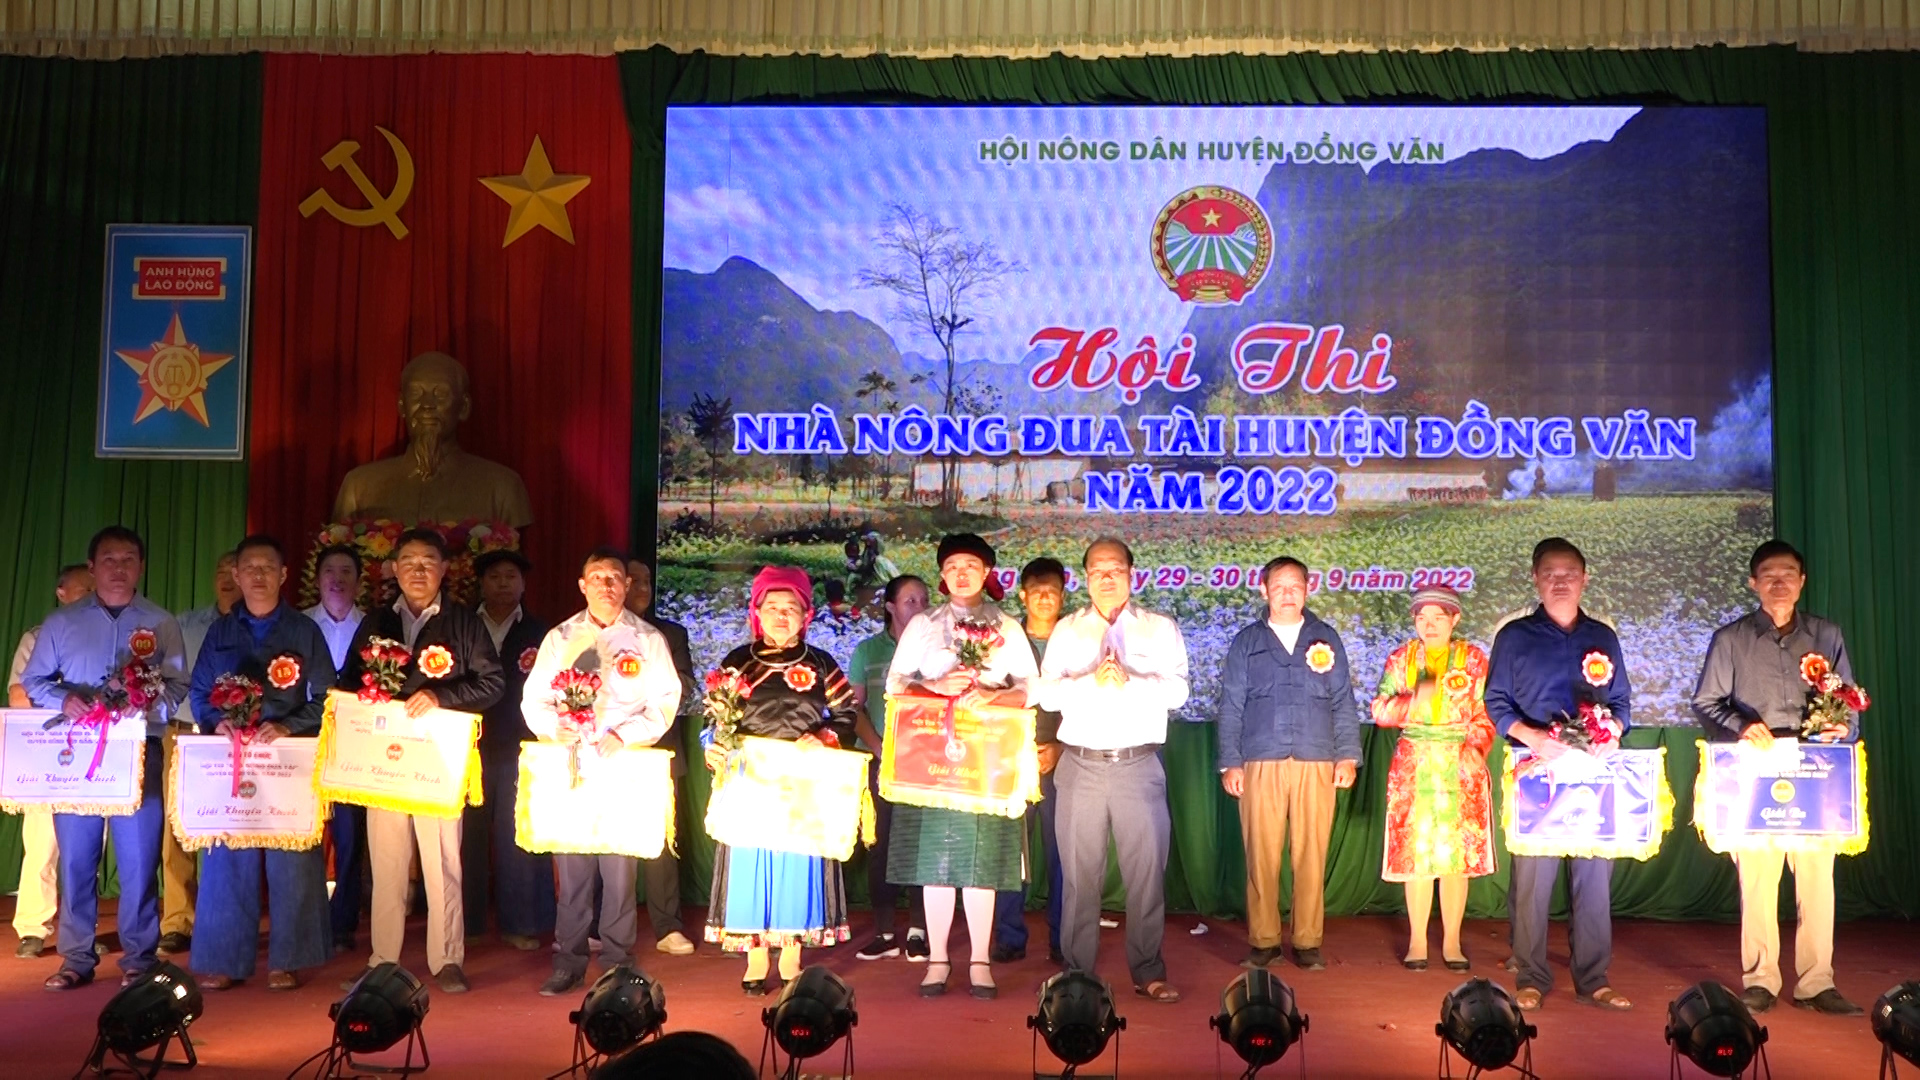 Đồng Văn tổ chức thành công hội thi Nhà nông đua tài năm 2022